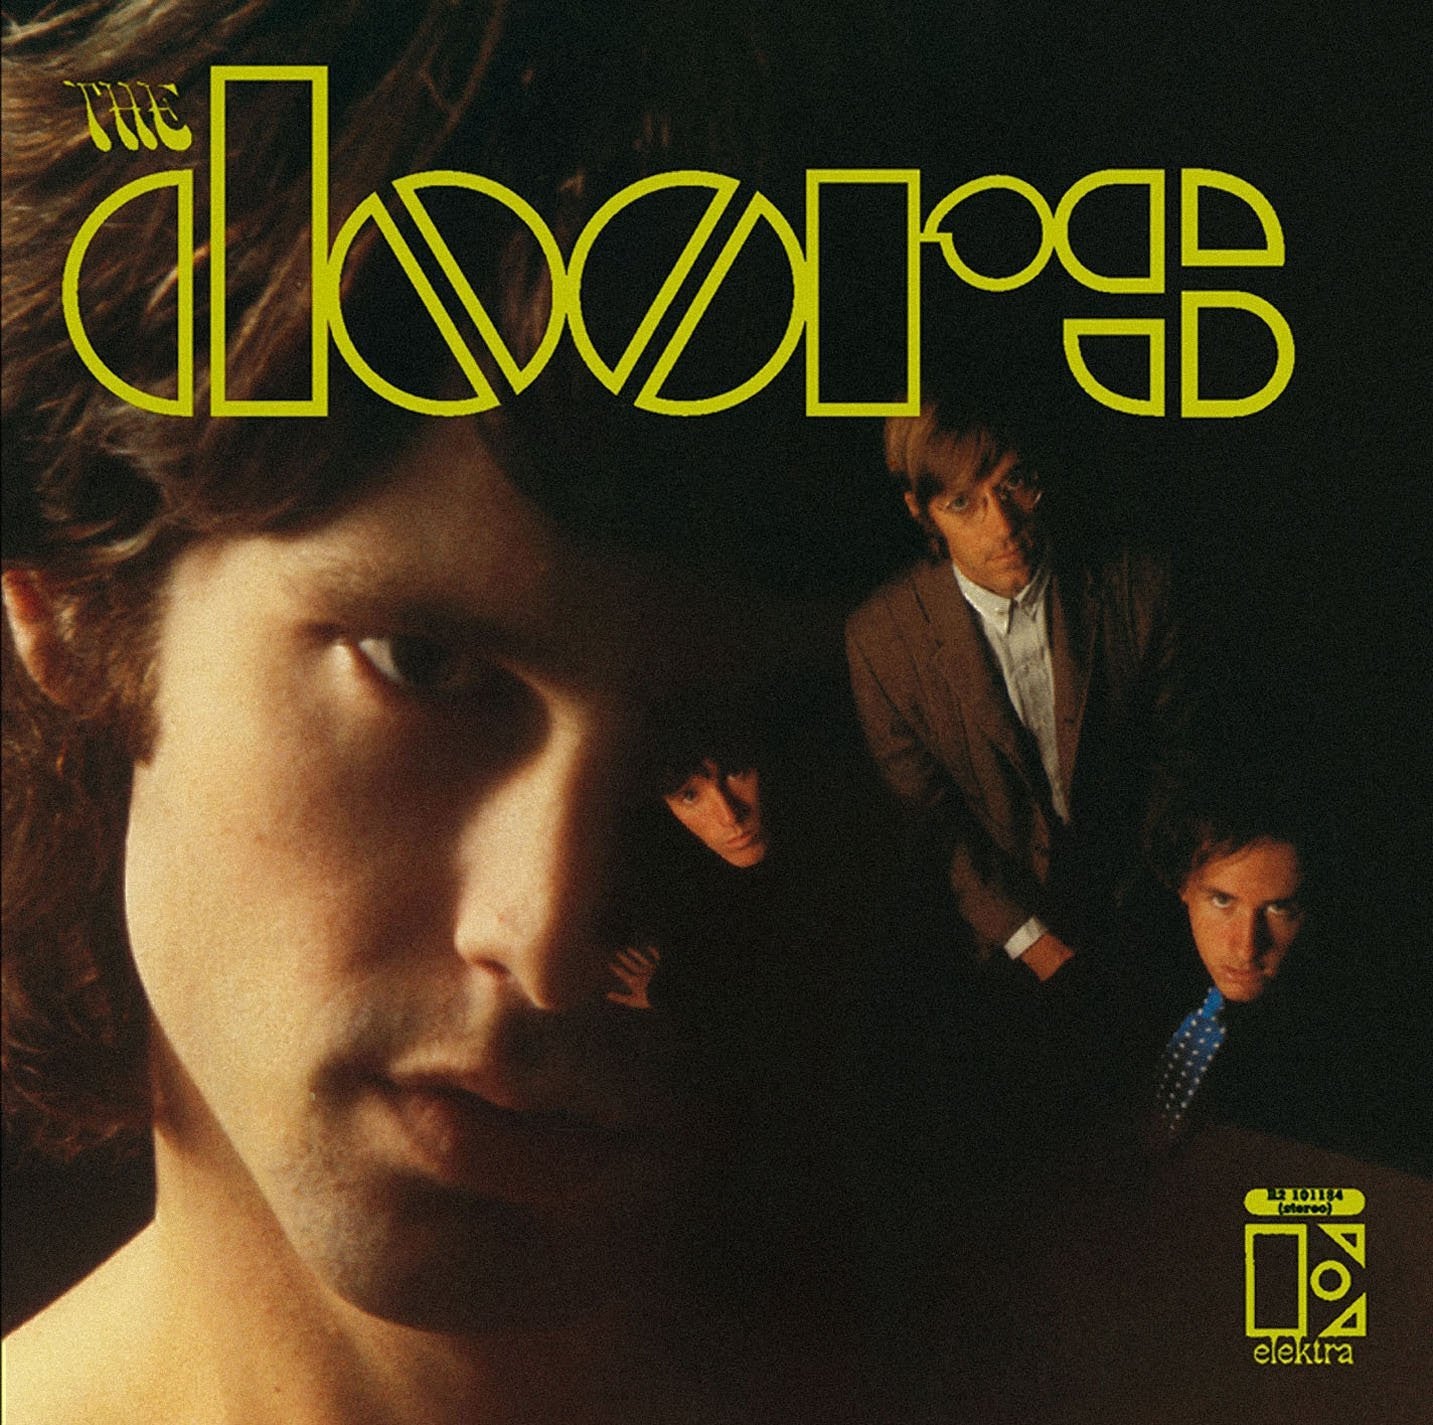 Doors - The Doors (Stereo) LP